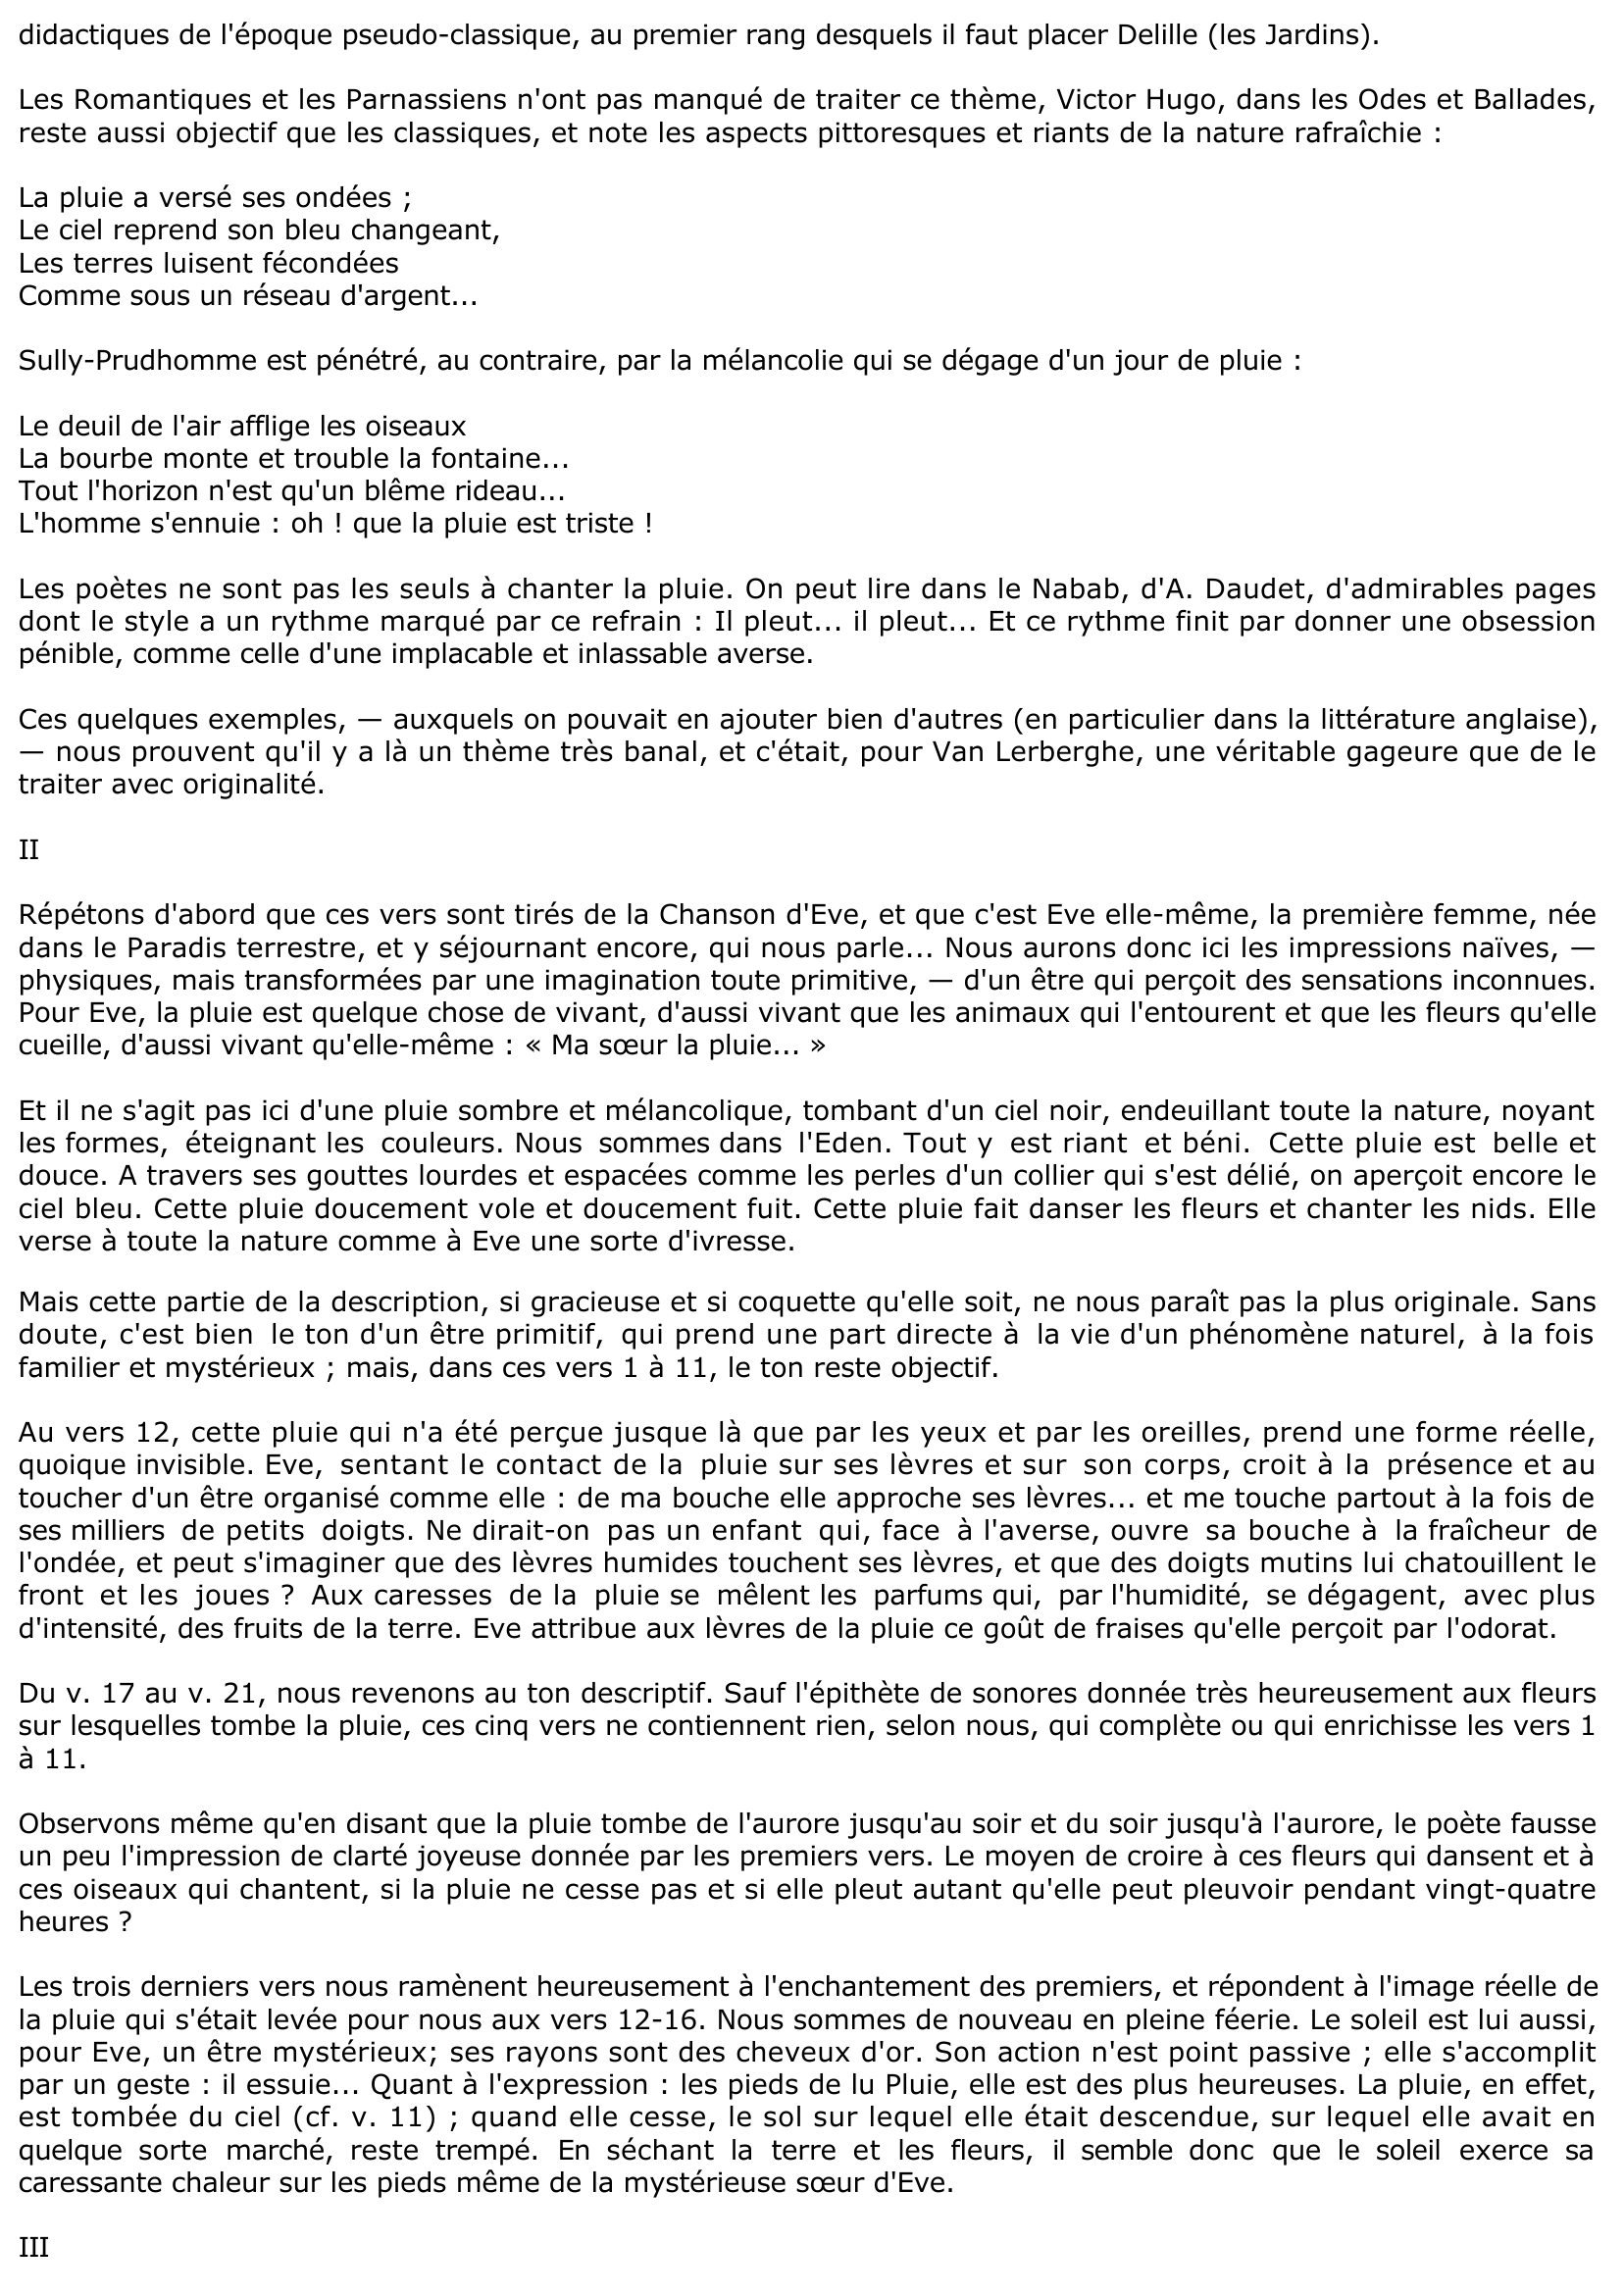 Prévisualisation du document MA SOEUR LA PLUIE... par Ch. Van Lerberghe